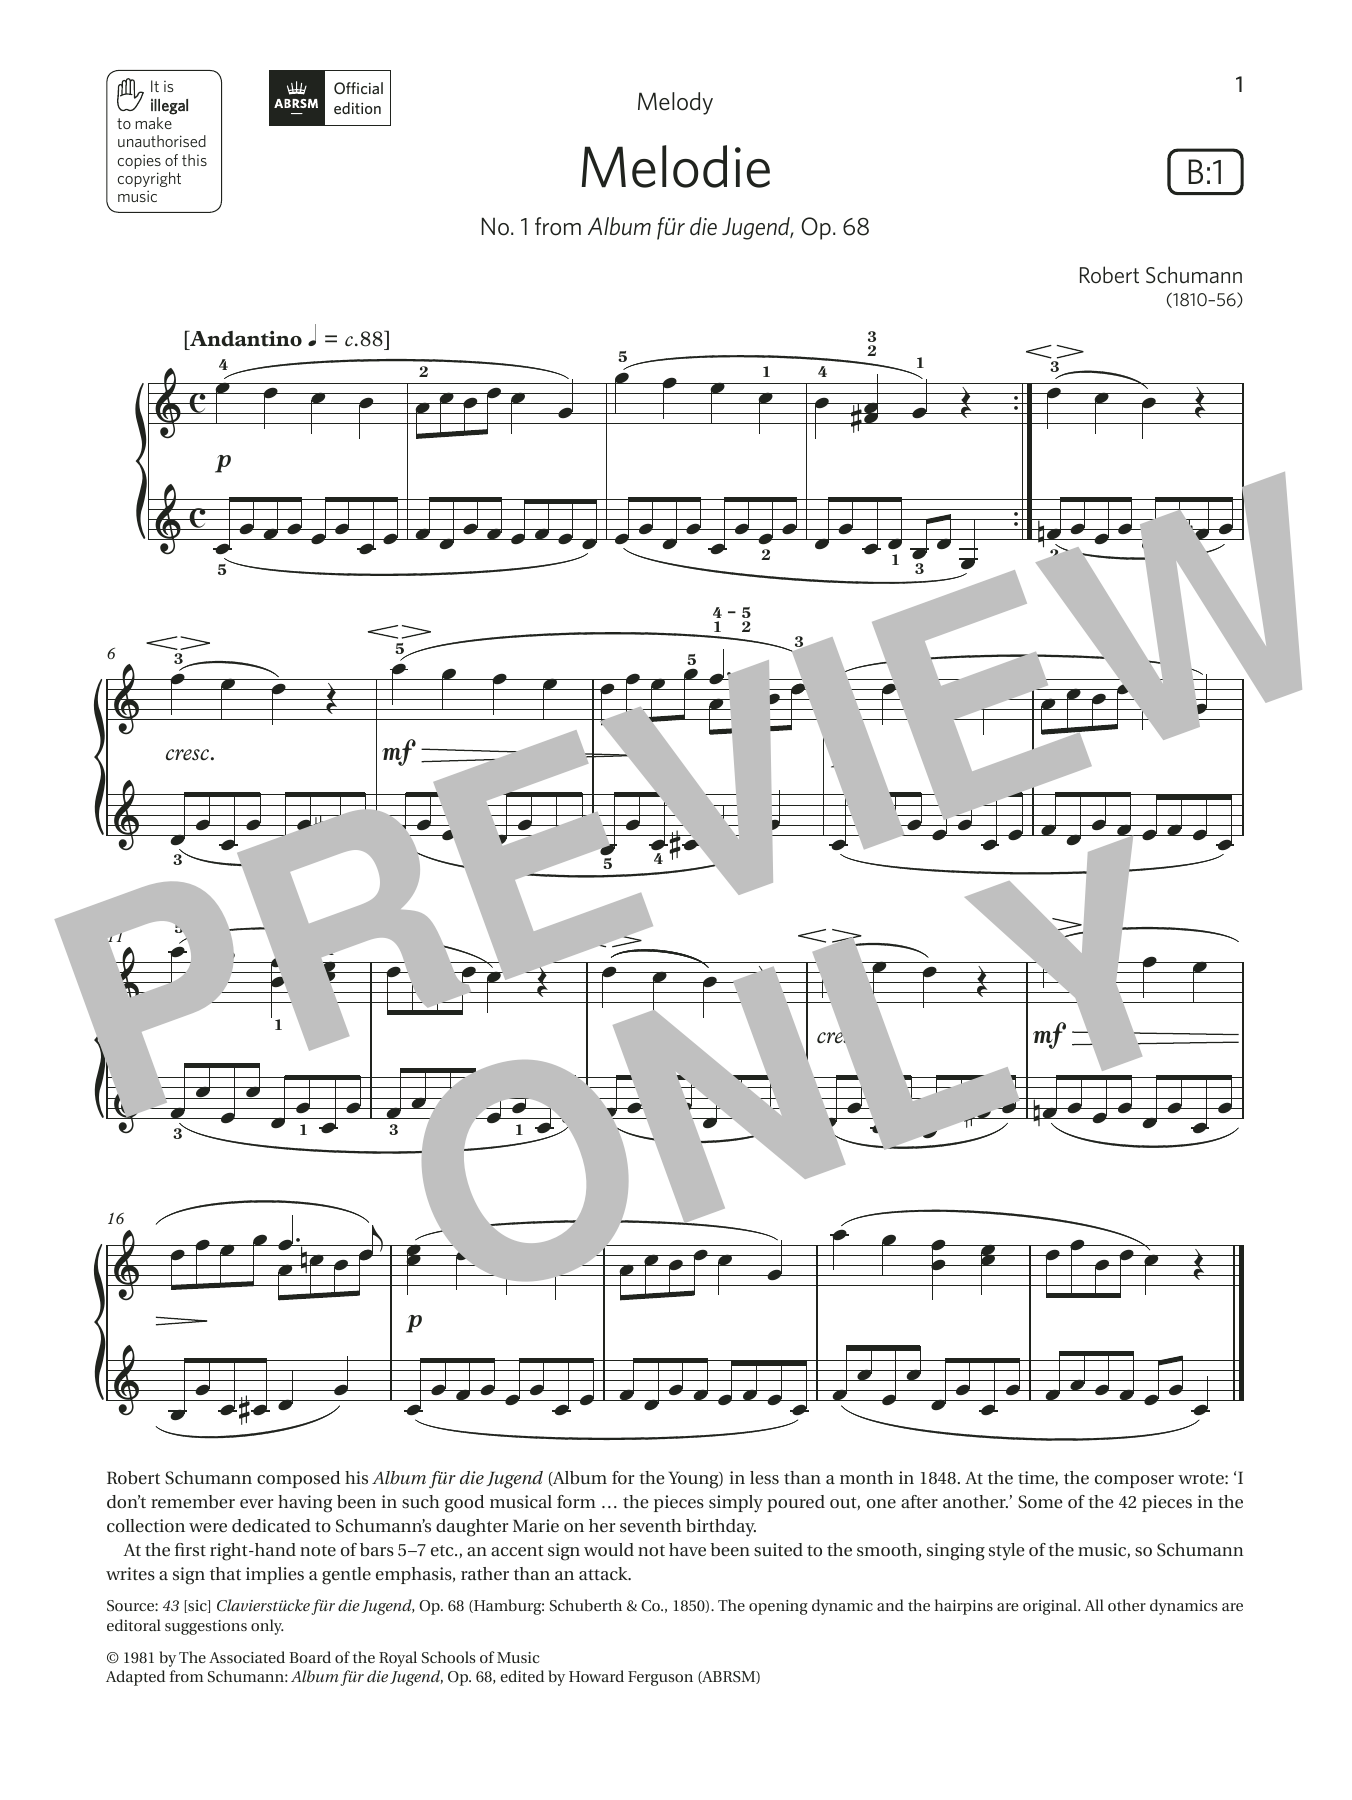 Download Robert Schumann Melodie (Grade 1, list B1, from the ABR Sheet Music